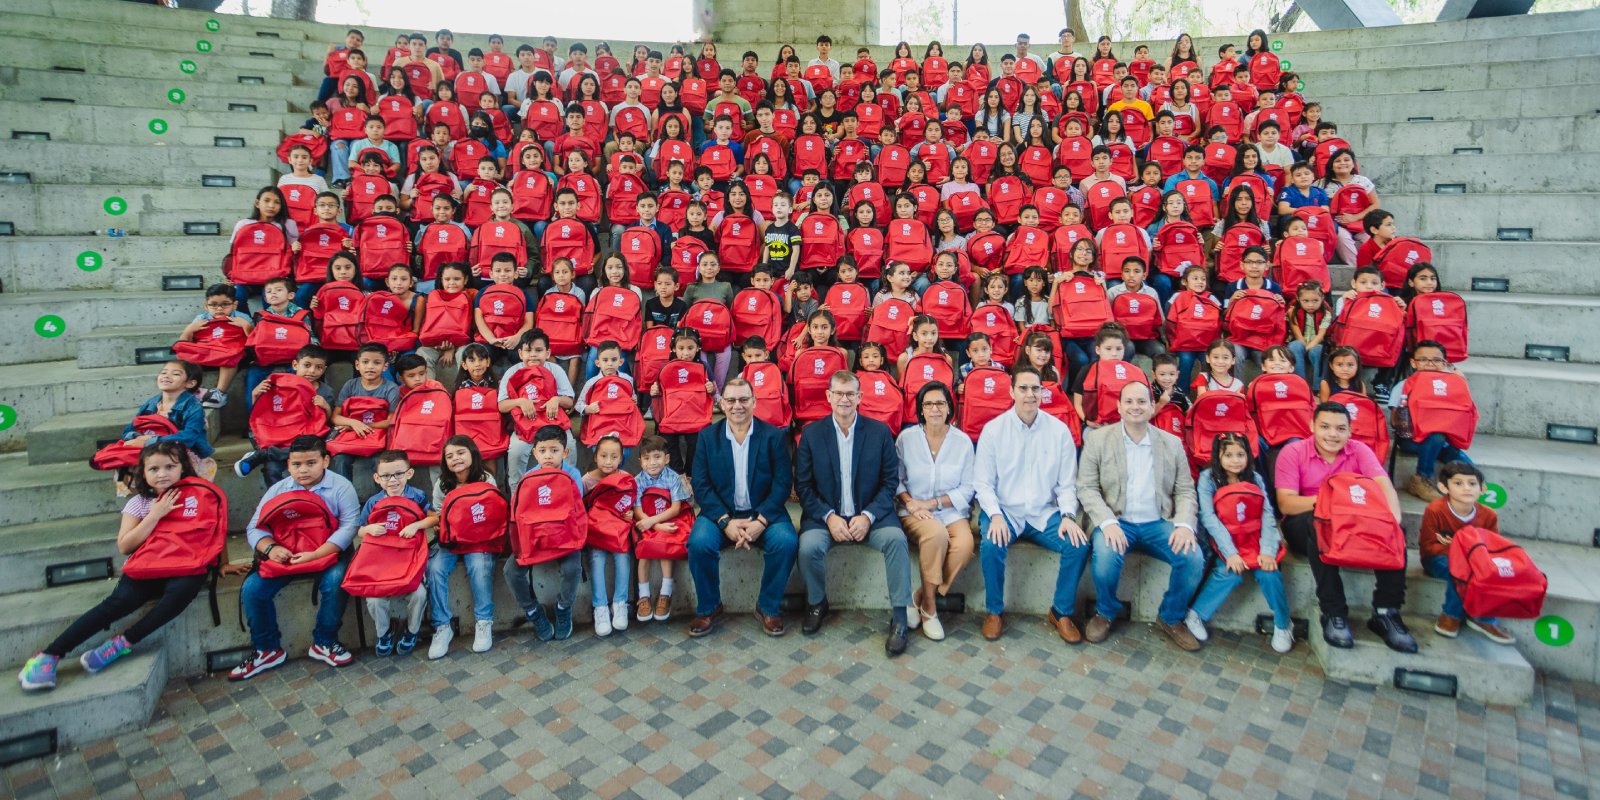 BAC impulsa el sueño de 233 niños y jóvenes con su programa de becas